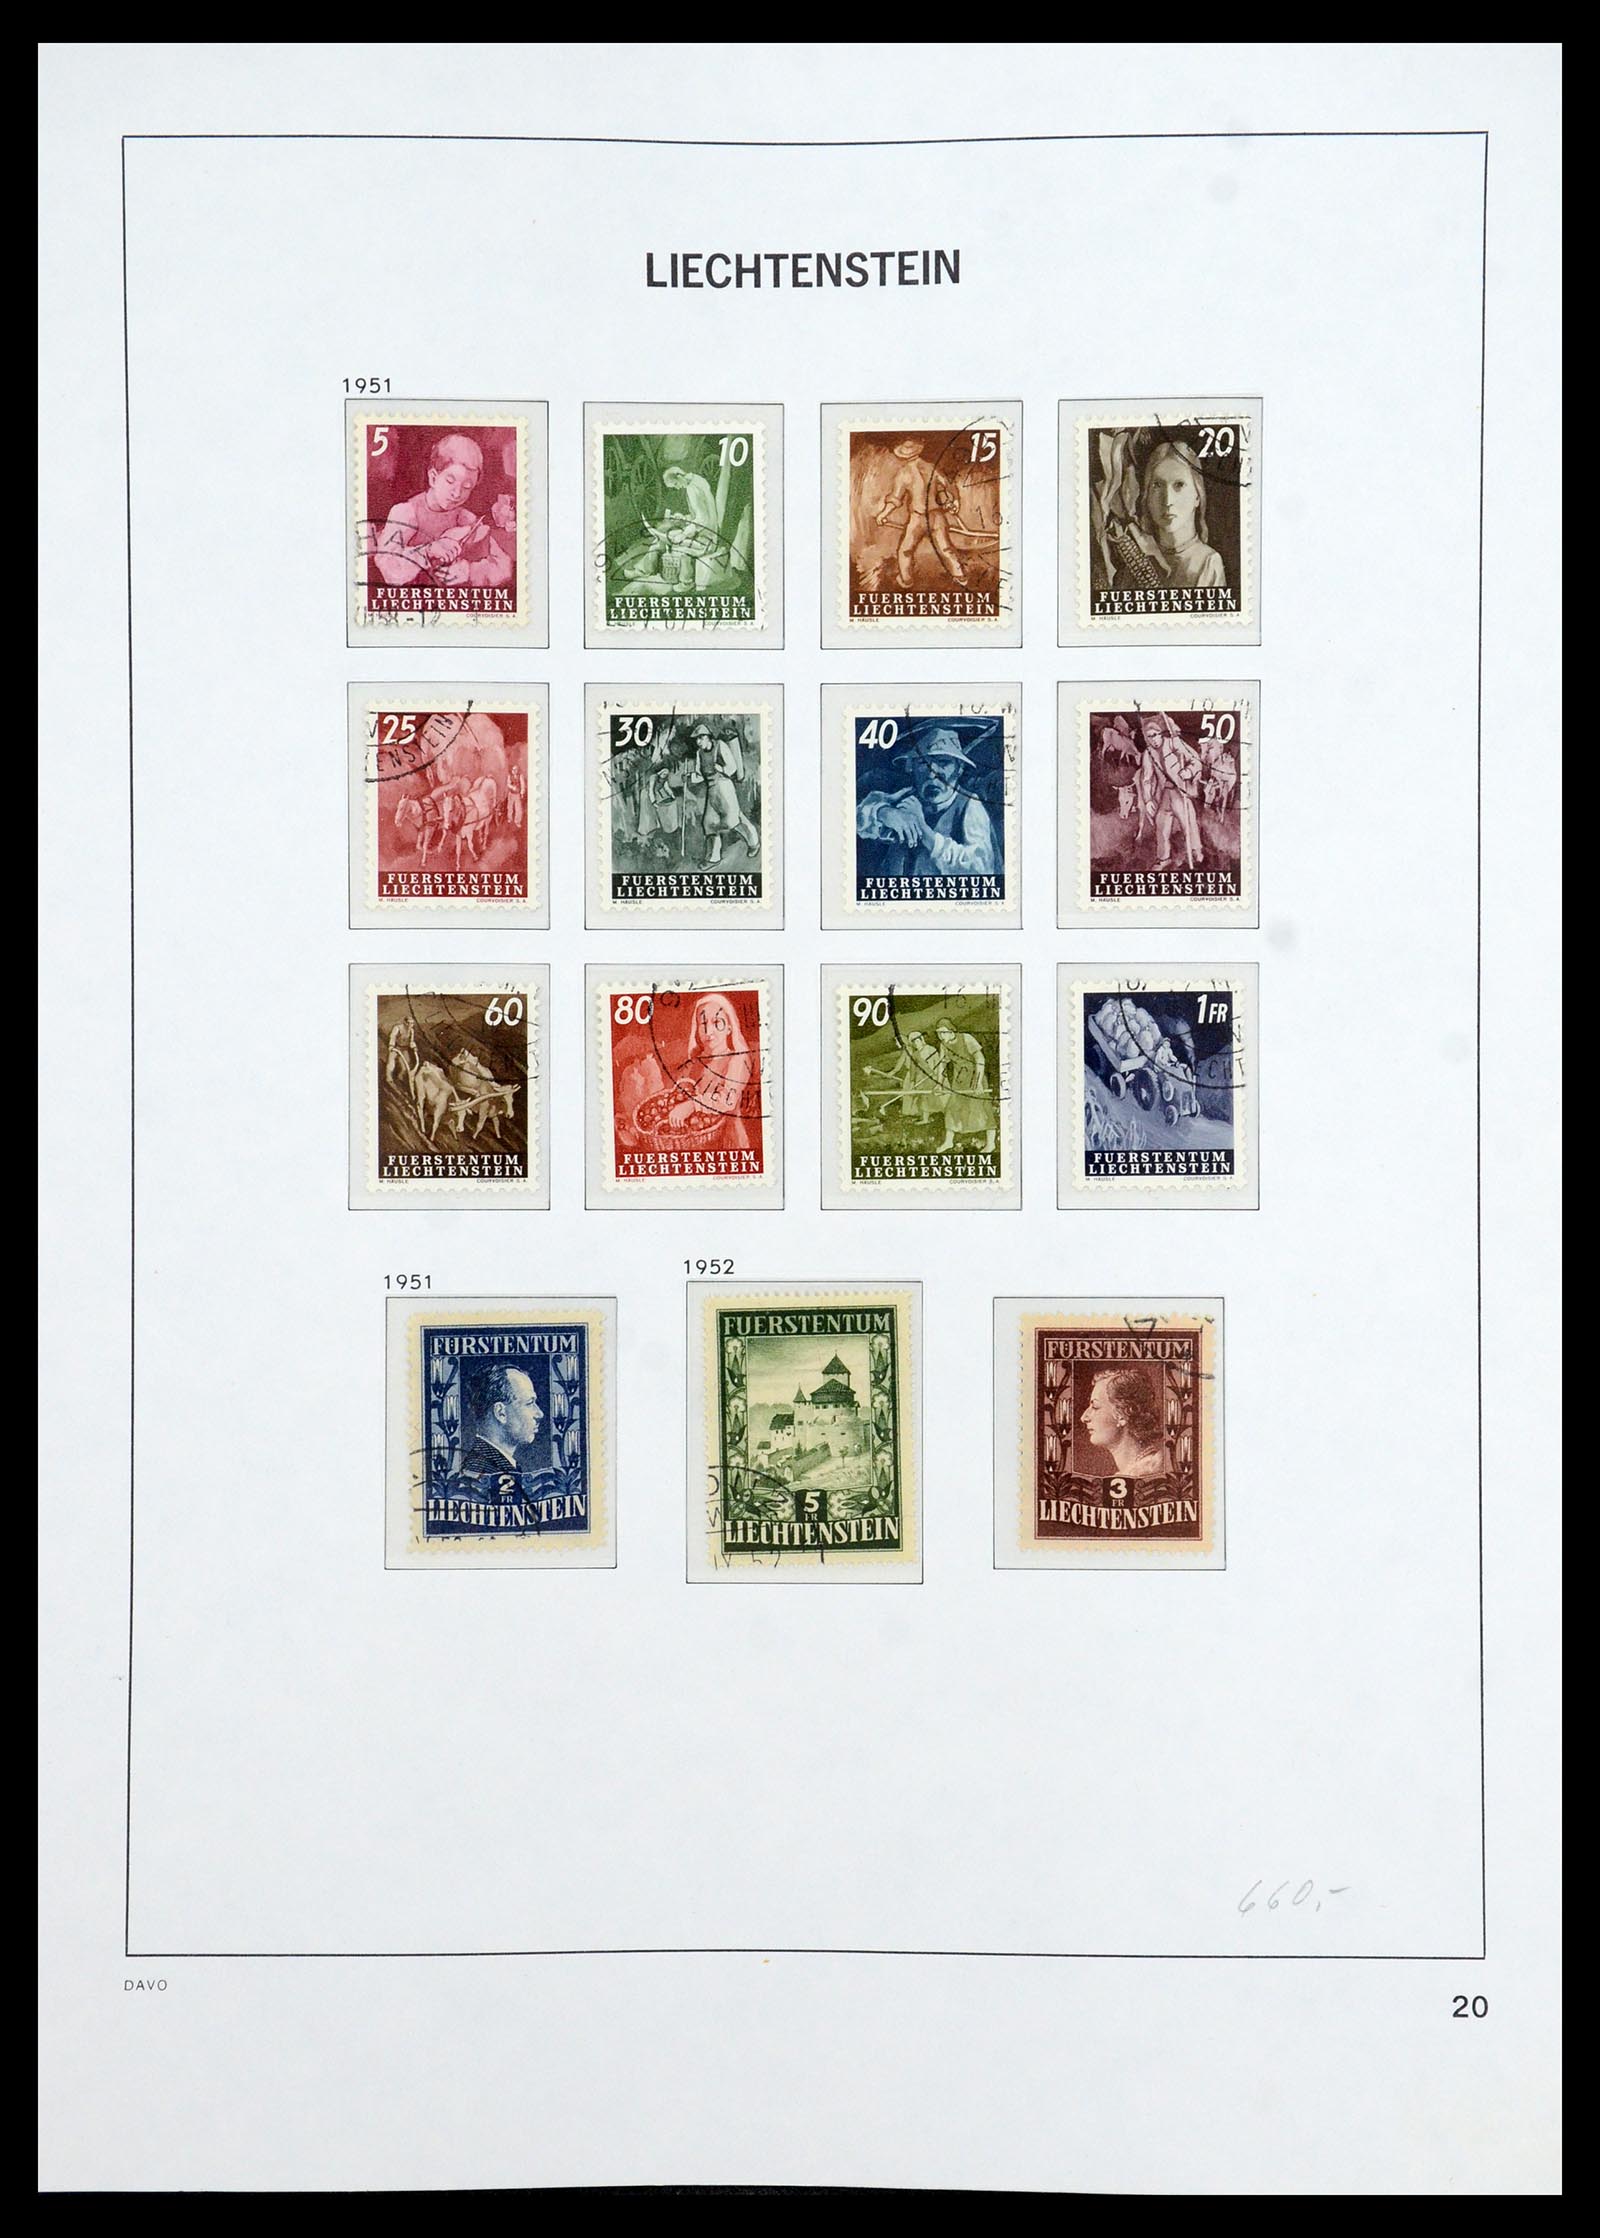 35896 021 - Stamp Collection 35896 Liechtenstein 1912-1990.